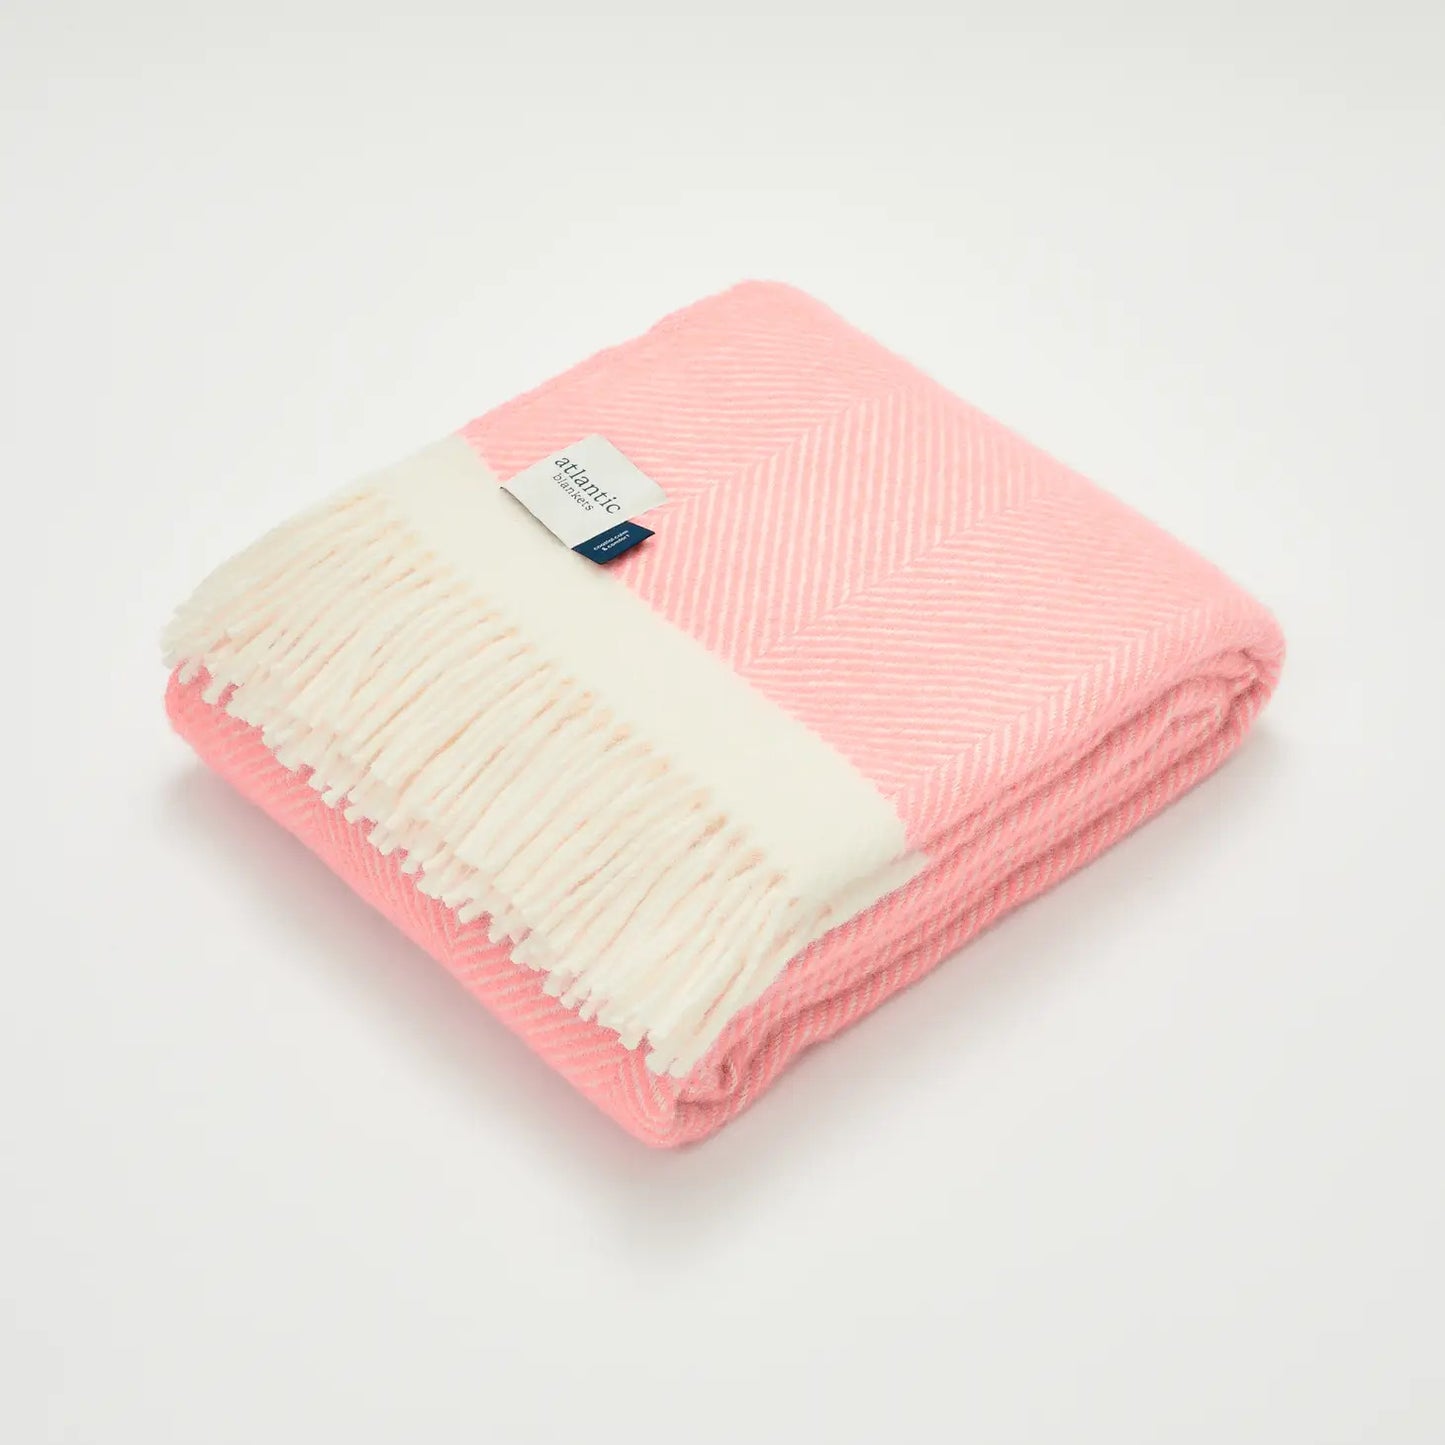 Candy Floss Pink Herringbone Wool Blanket